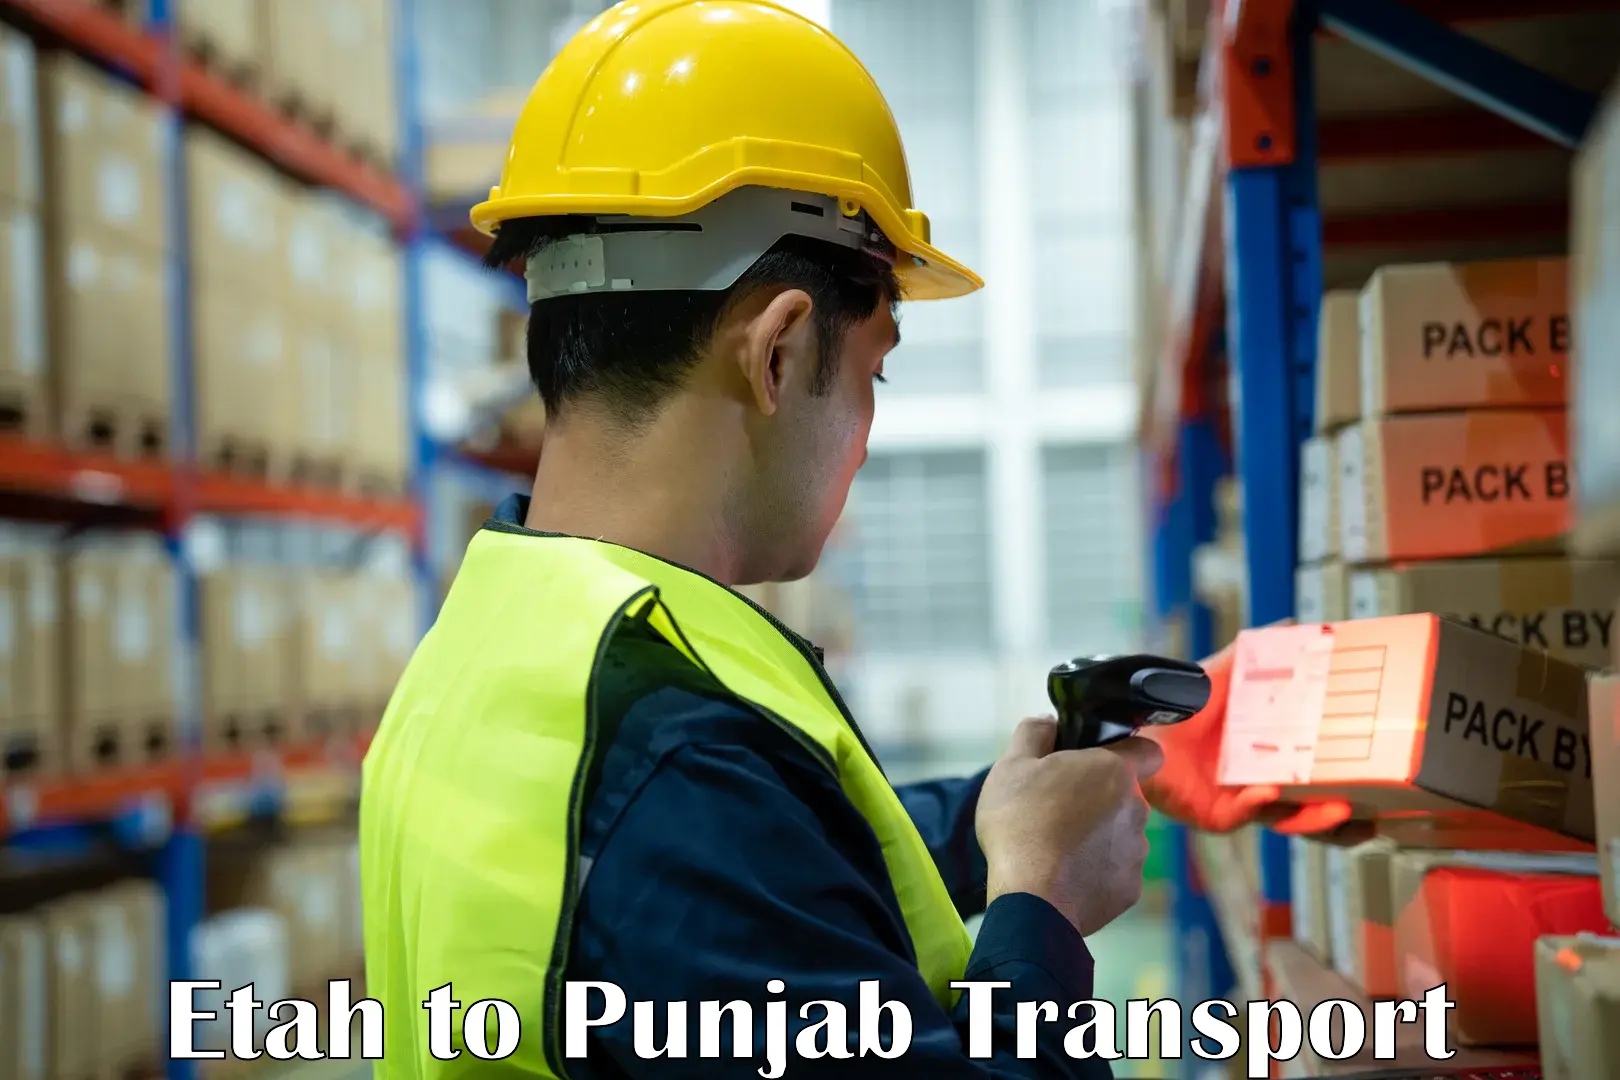 Shipping partner Etah to Punjab